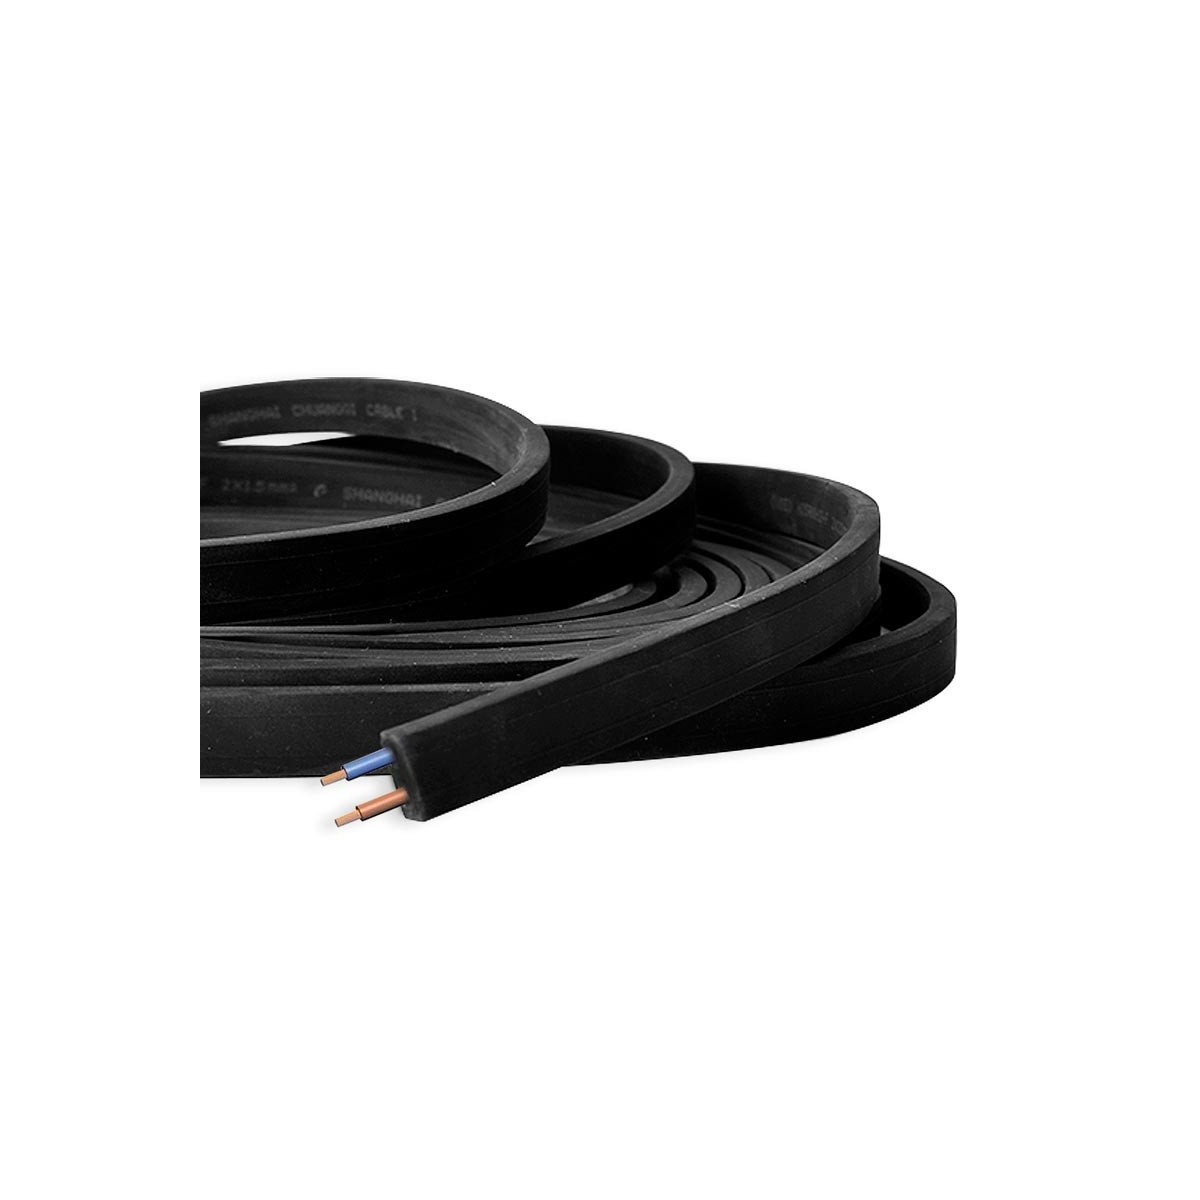 Cable Plano Negro 2x1,5mm2 para Guirnalda a medida (venta por metros)